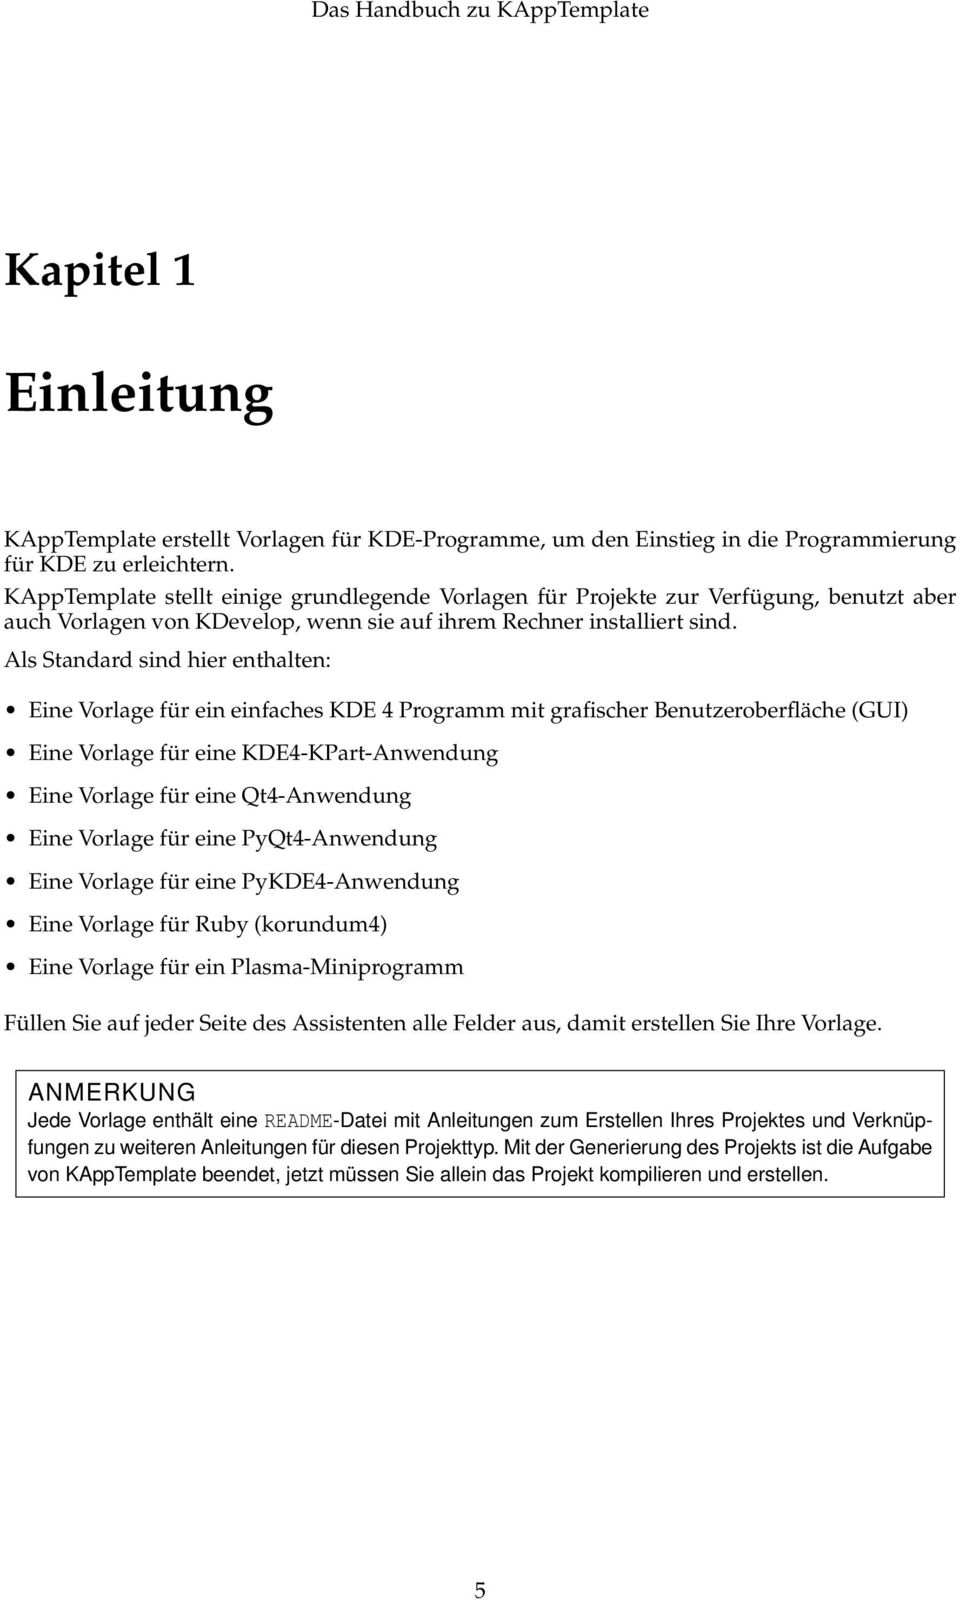 Als Standard sind hier enthalten: Eine Vorlage für ein einfaches KDE 4 Programm mit grafischer Benutzeroberfläche (GUI) Eine Vorlage für eine KDE4-KPart-Anwendung Eine Vorlage für eine Qt4-Anwendung